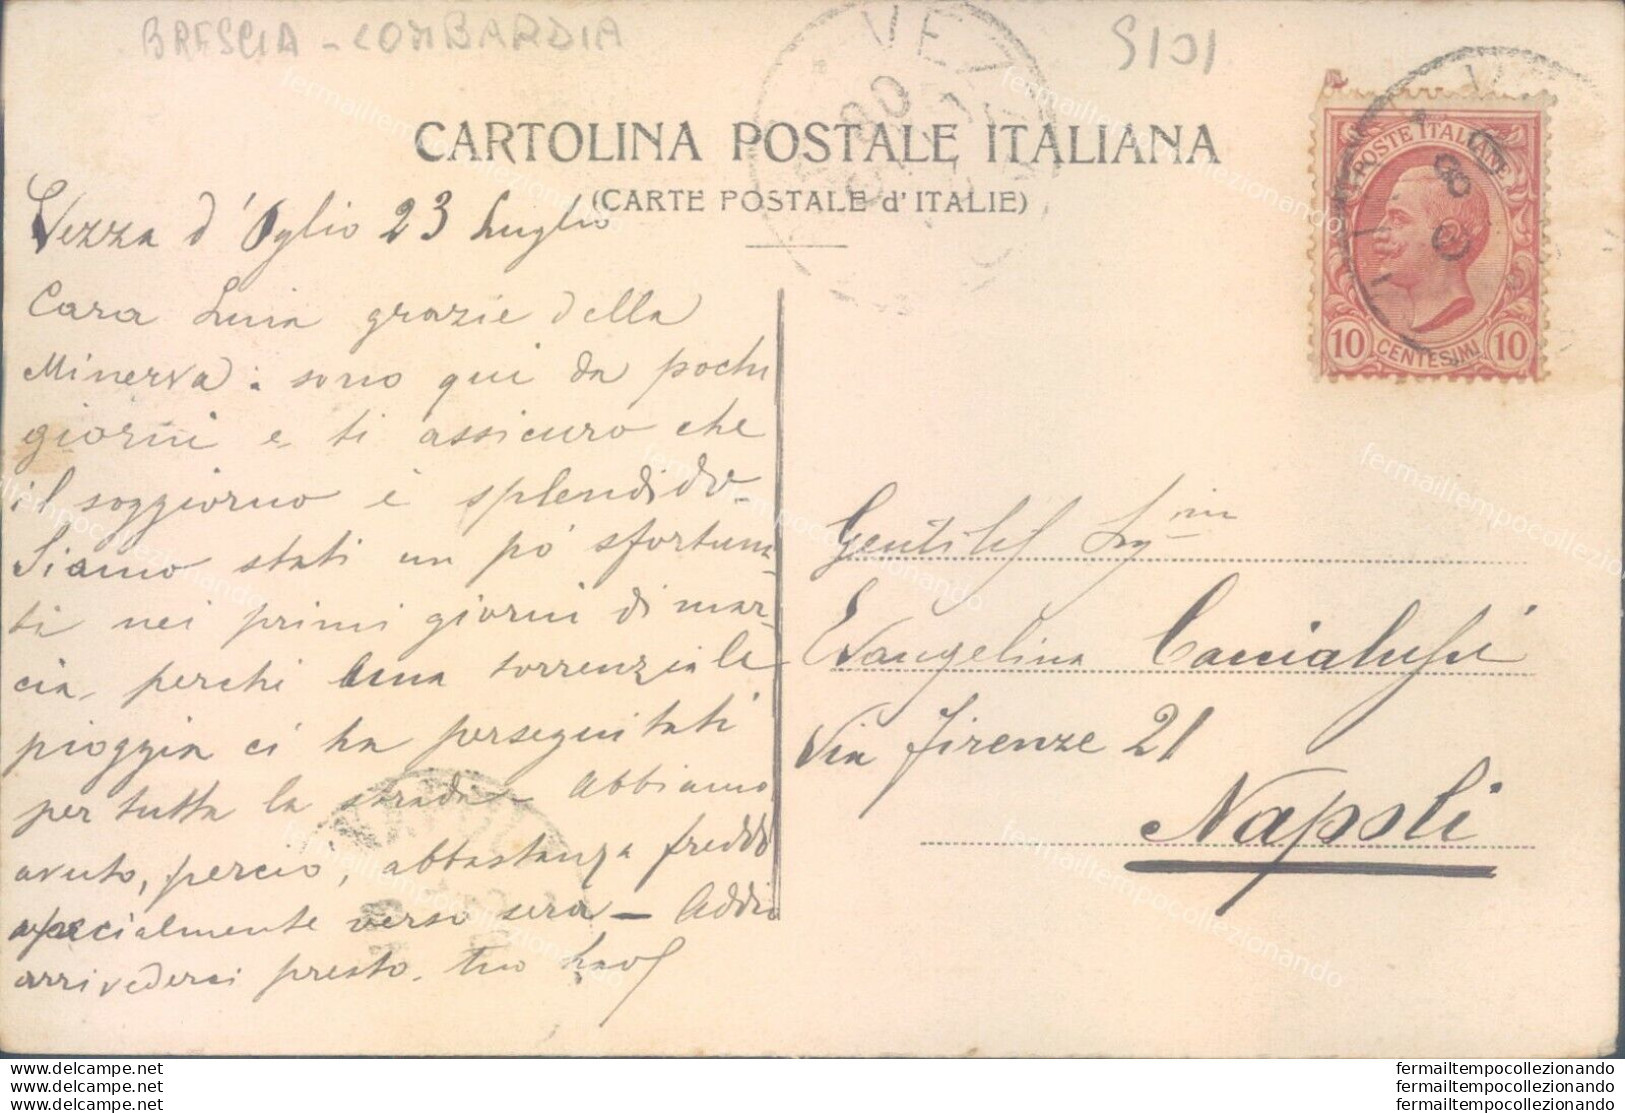 S101 Cartolina Vezza D'oglio Panorama 1908 Provincia Di Brescia - Brescia